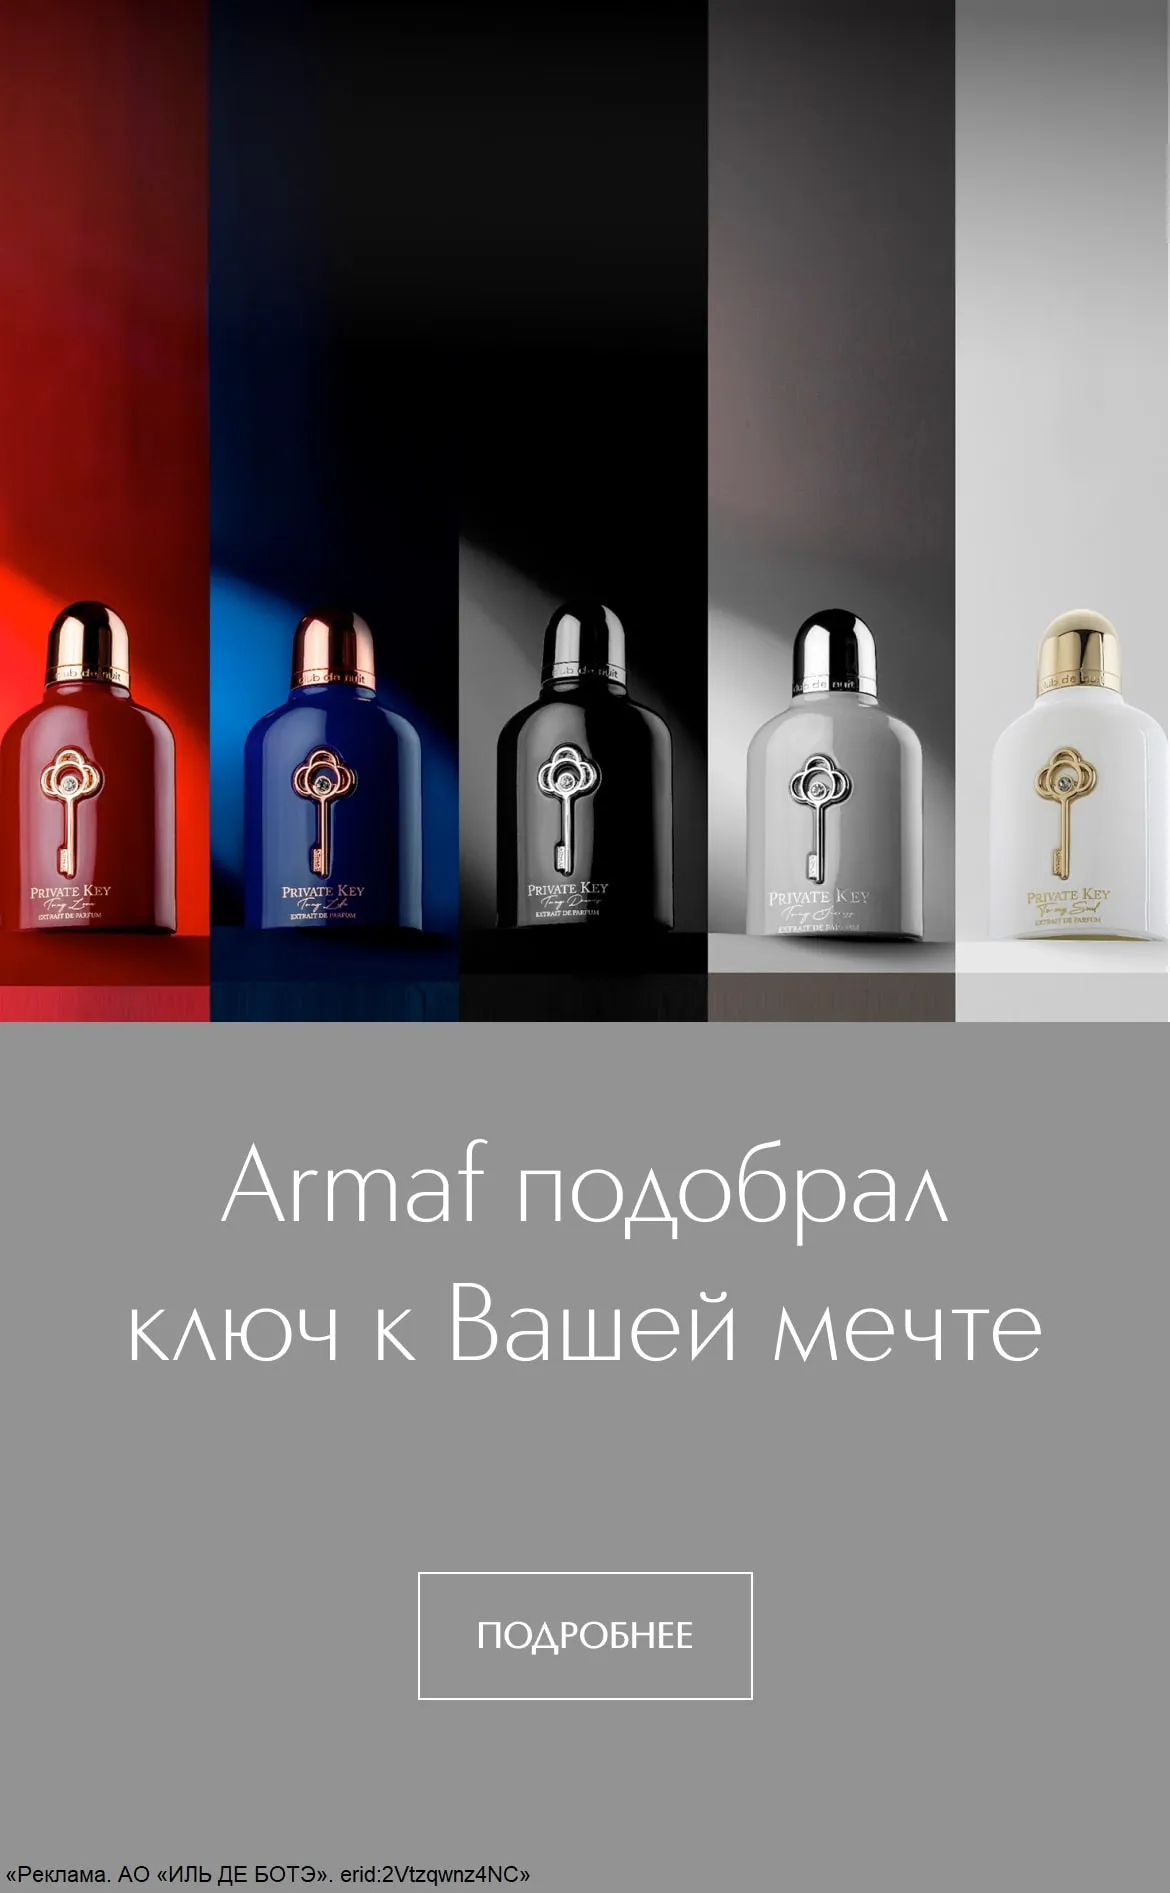 Роскошная коллекция ароматов Armaf Private Key — это уникальный набор парфюмерных инструментов, который поможет запустить механизм достижения желаемых целей – личный ключ к успеху, любви, мечте, душе и жизни.